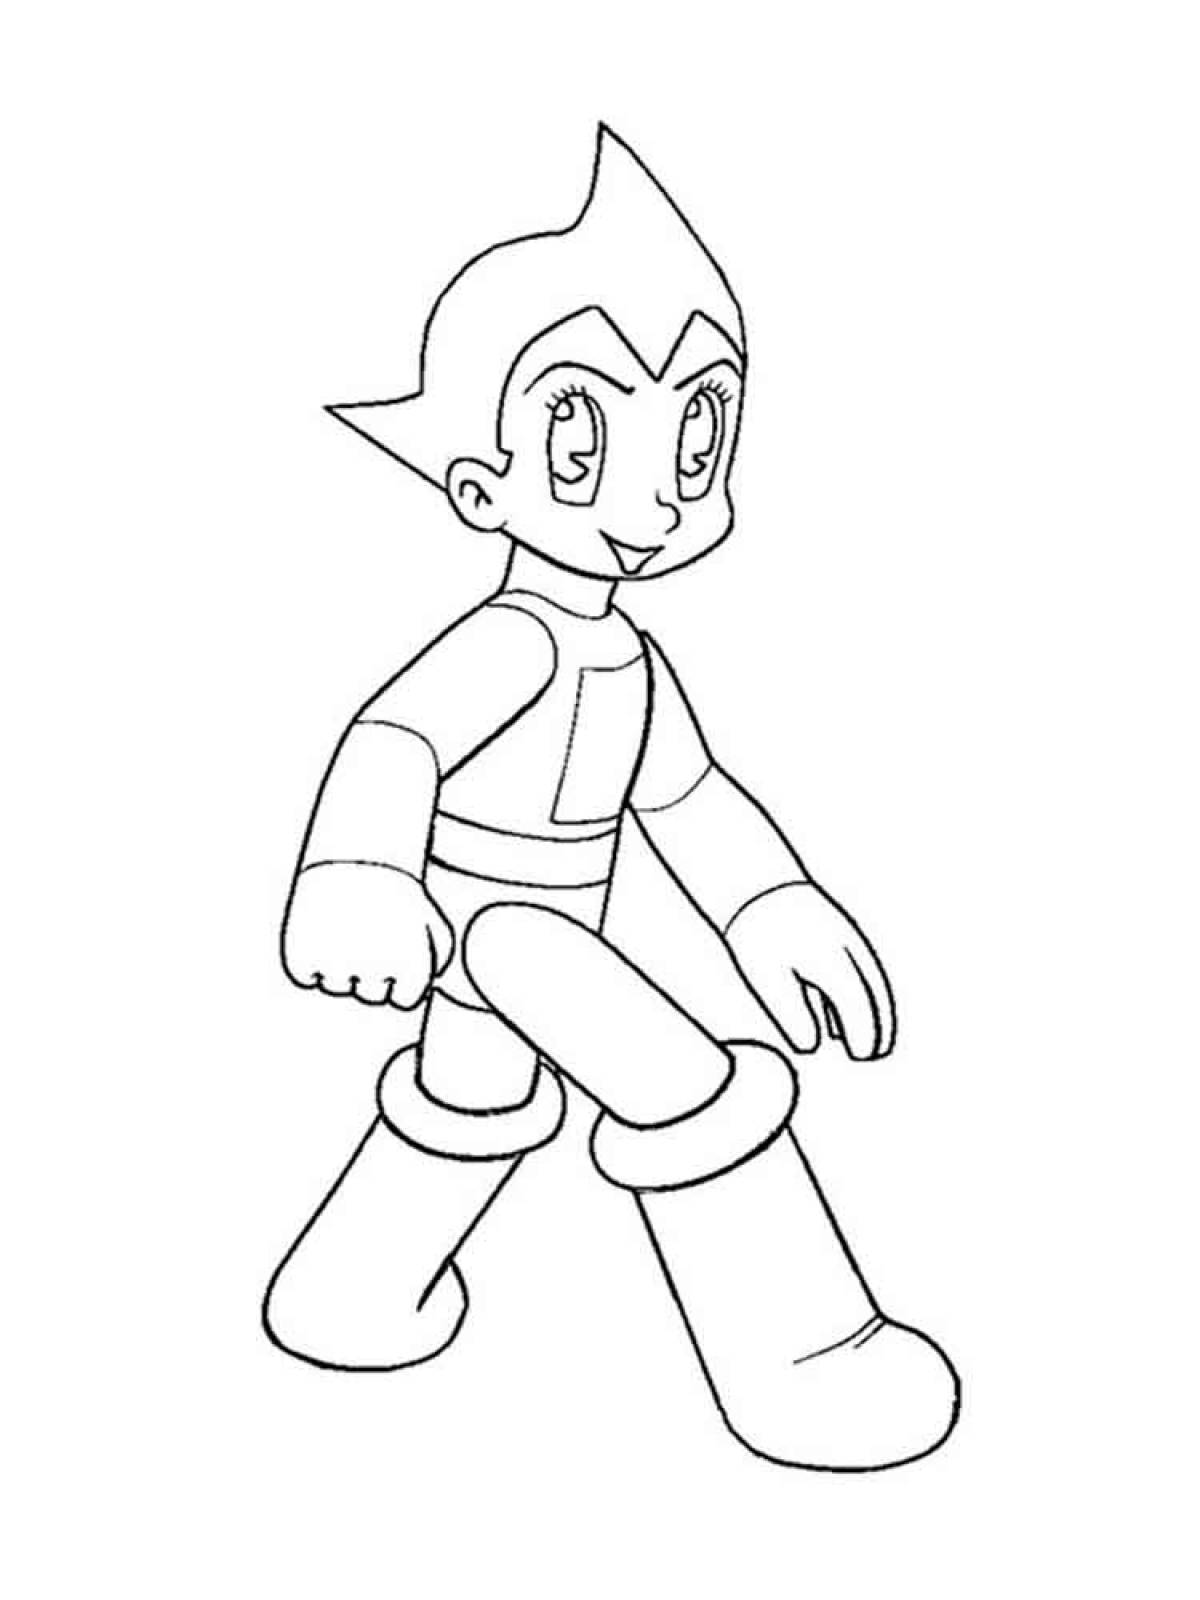 Astro Boy 15